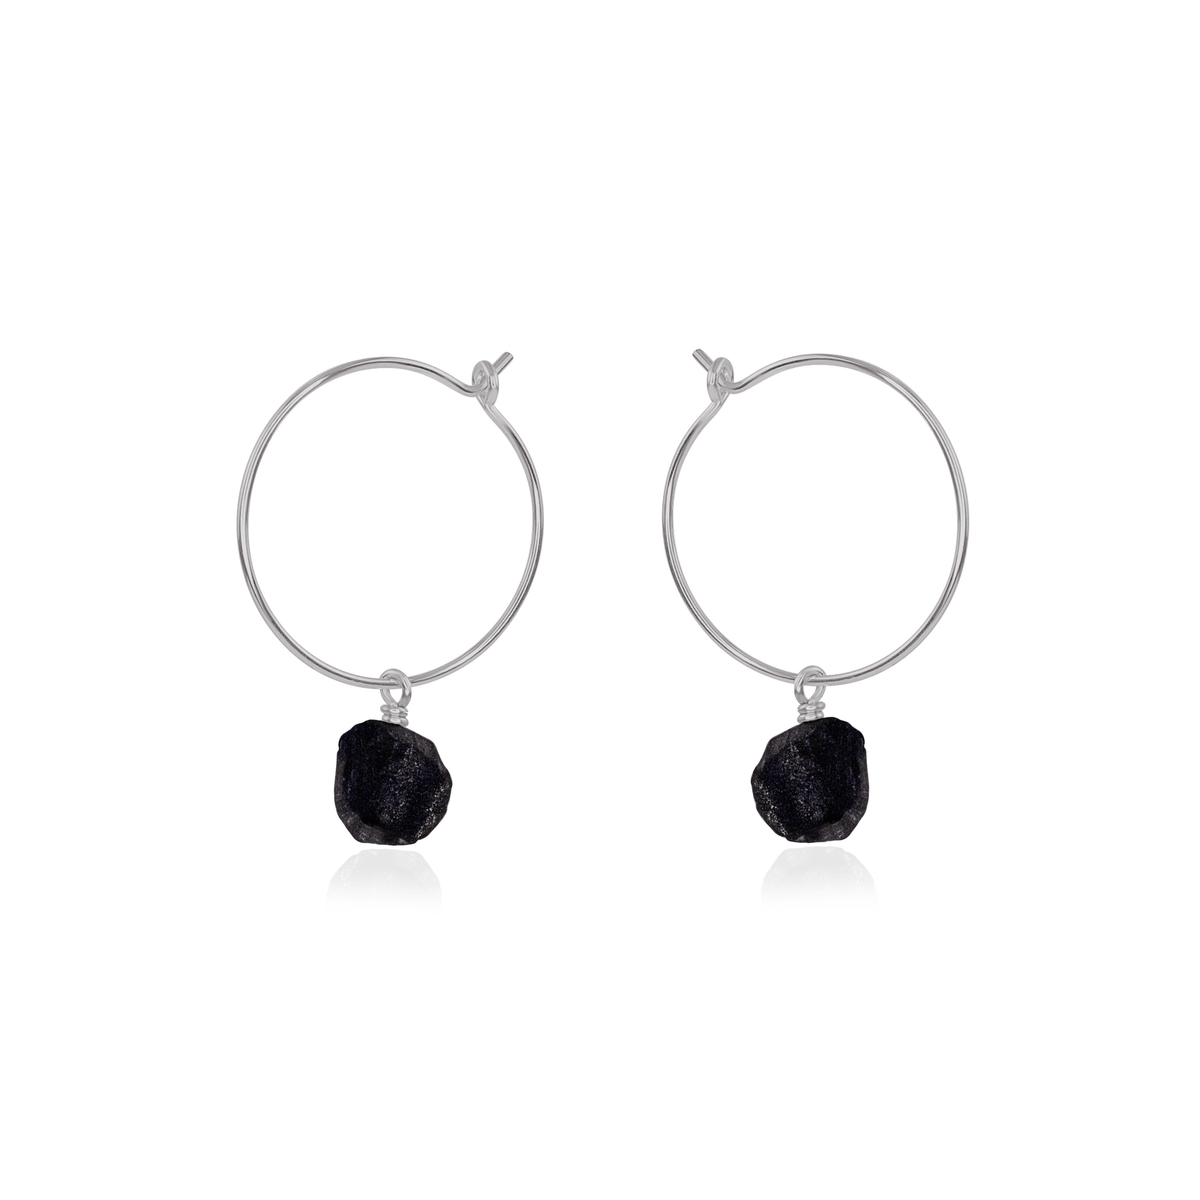 Raw Obsidian Gemstone Dangle Hoop Earrings - Raw Obsidian Gemstone Dangle Hoop Earrings - Stainless Steel - Luna Tide Handmade Crystal Jewellery